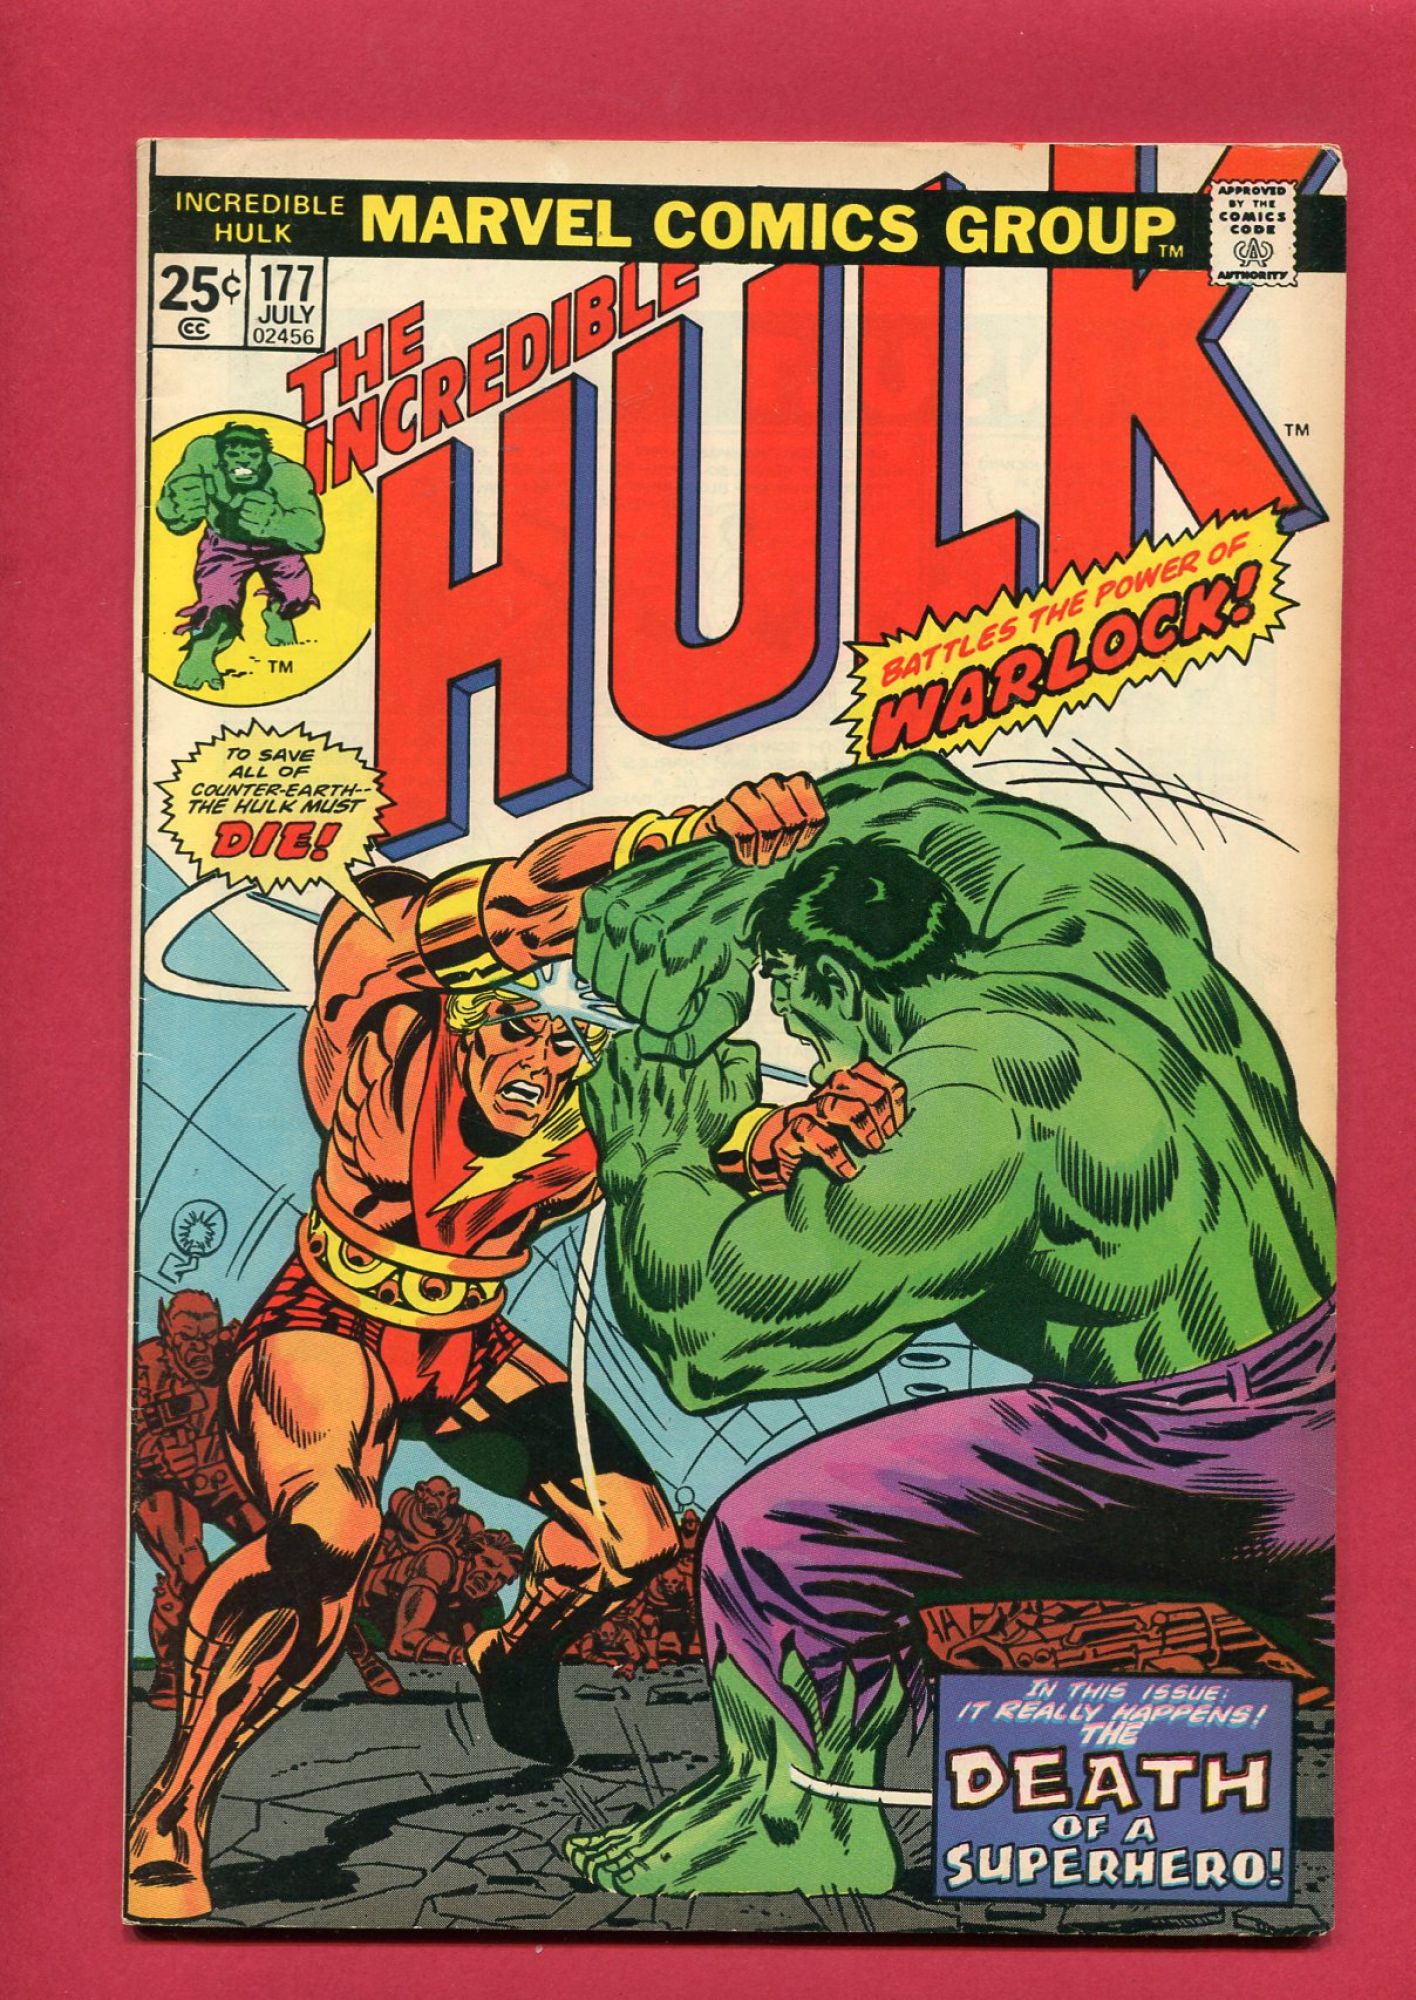 Incredible Hulk #177, Jul 1974, 7.0 FN/VF